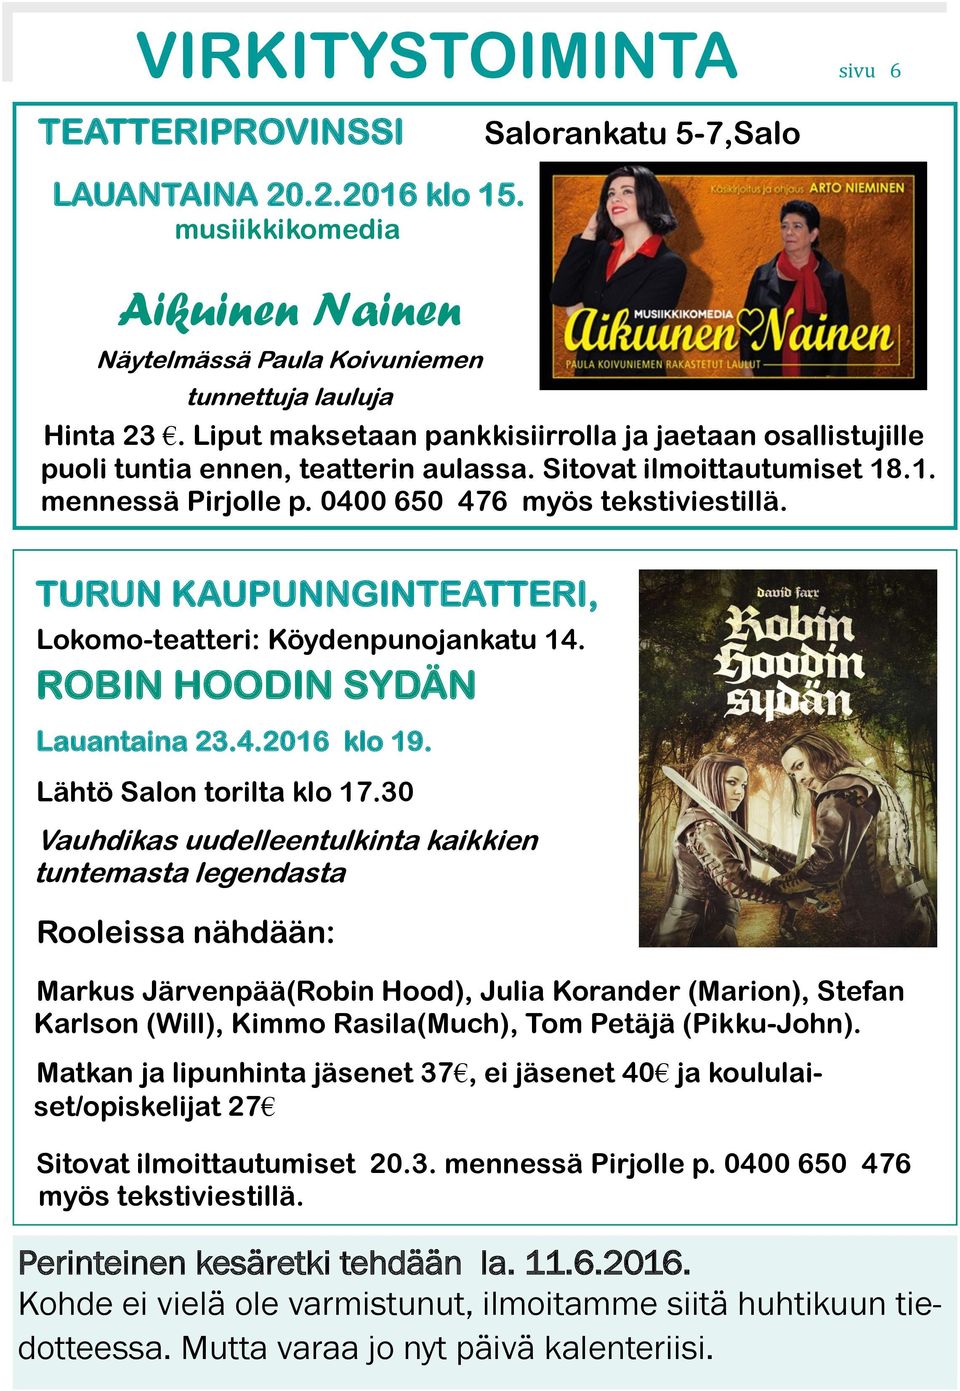 TURUN KAUPUNNGINTEATTERI, Lokomo-teatteri: Köydenpunojankatu 14. ROBIN HOODIN SYDÄN Lauantaina 23.4.2016 klo 19. Lähtö Salon torilta klo 17.